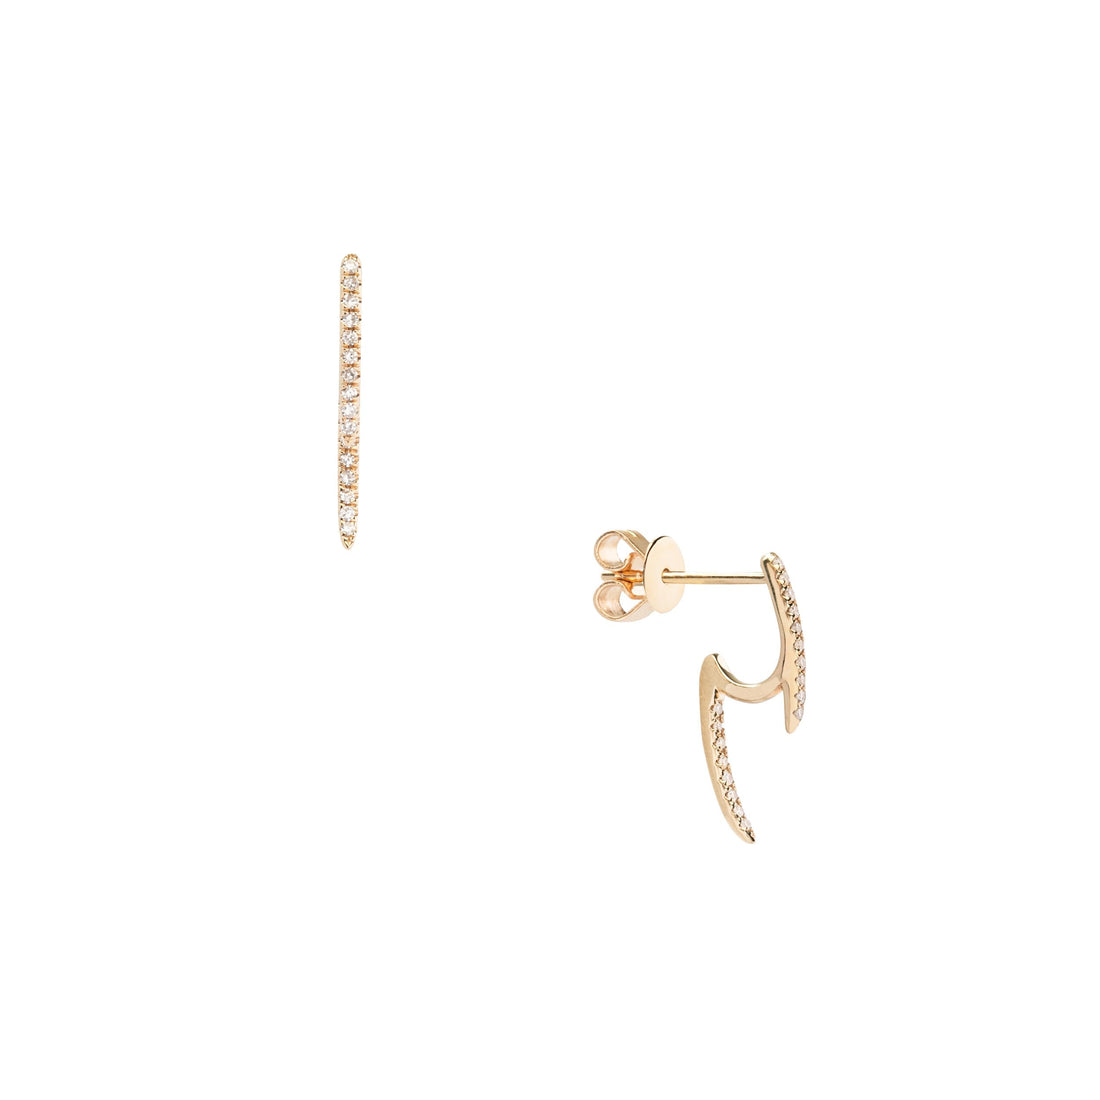 Bette Earrings by Kasia Jewelry – Kasia J.